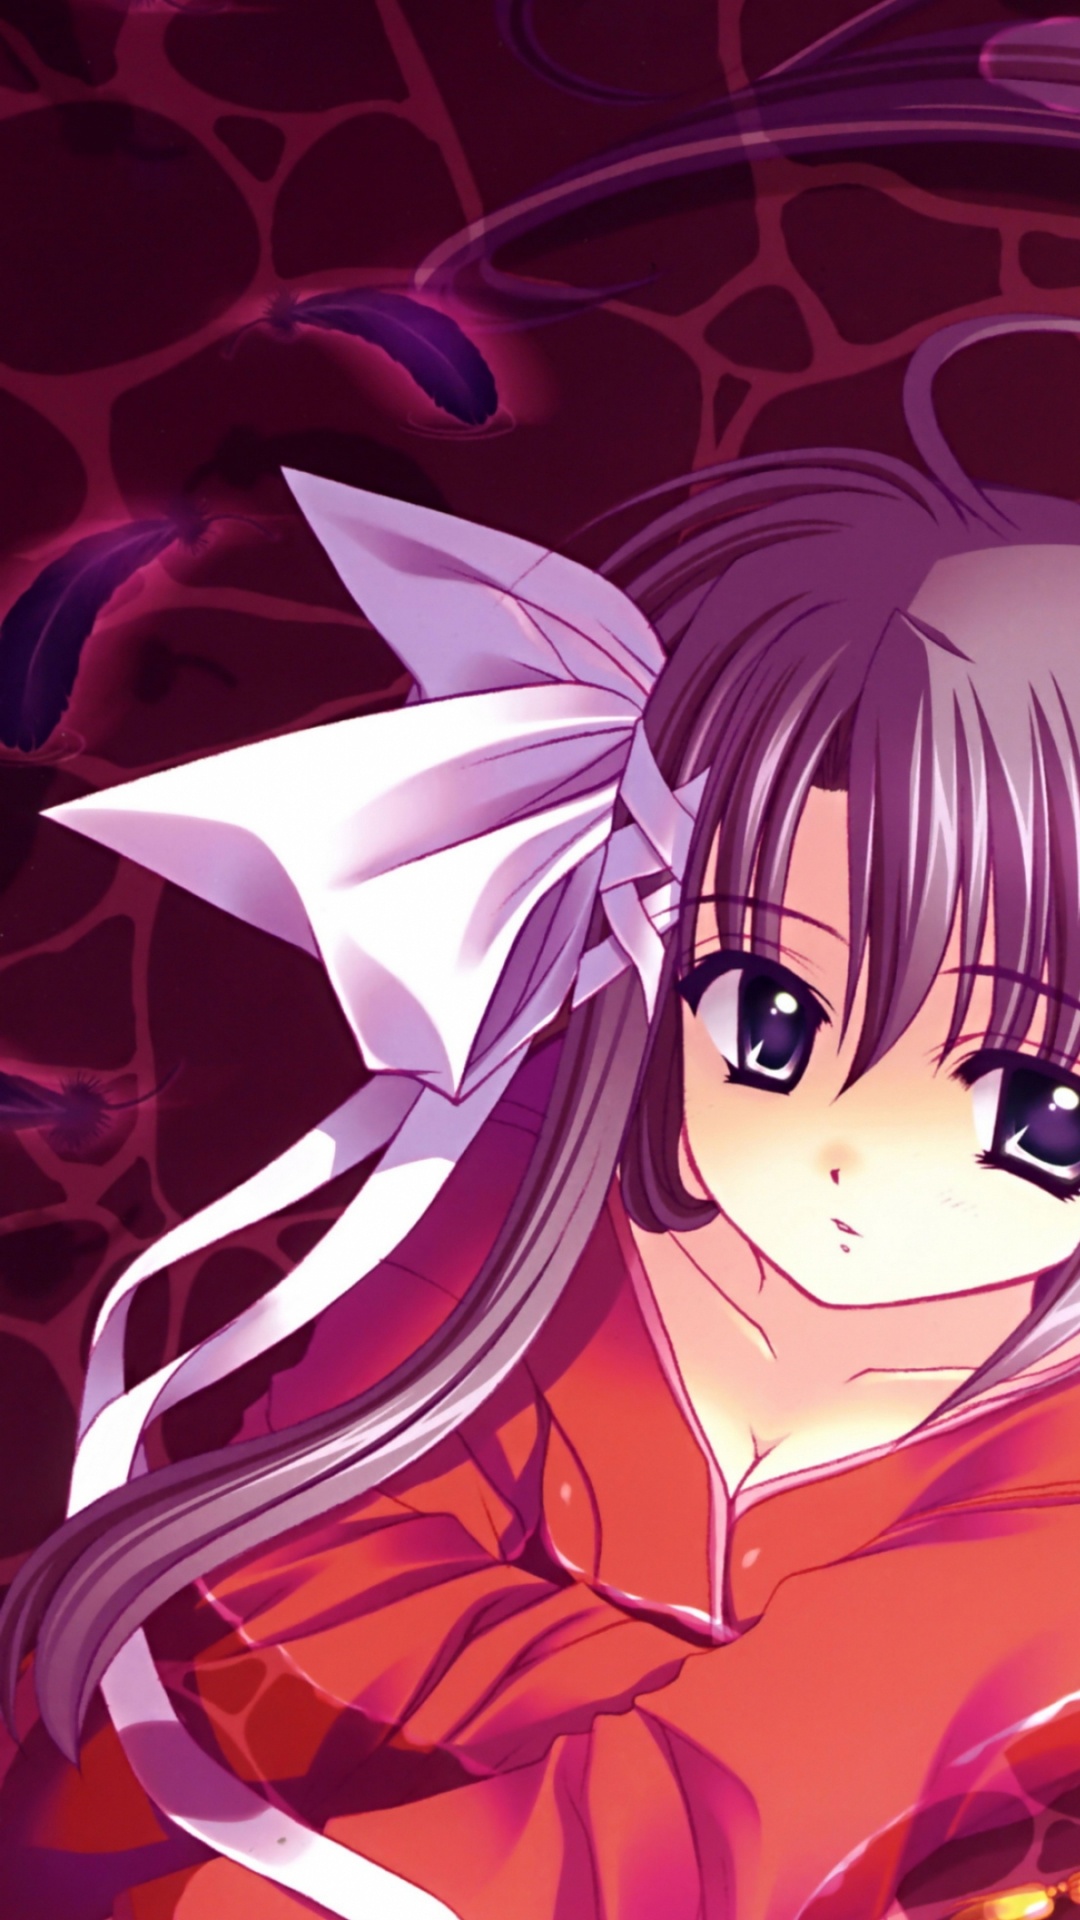 Personaje de Anime de Chica Pelirroja. Wallpaper in 1080x1920 Resolution